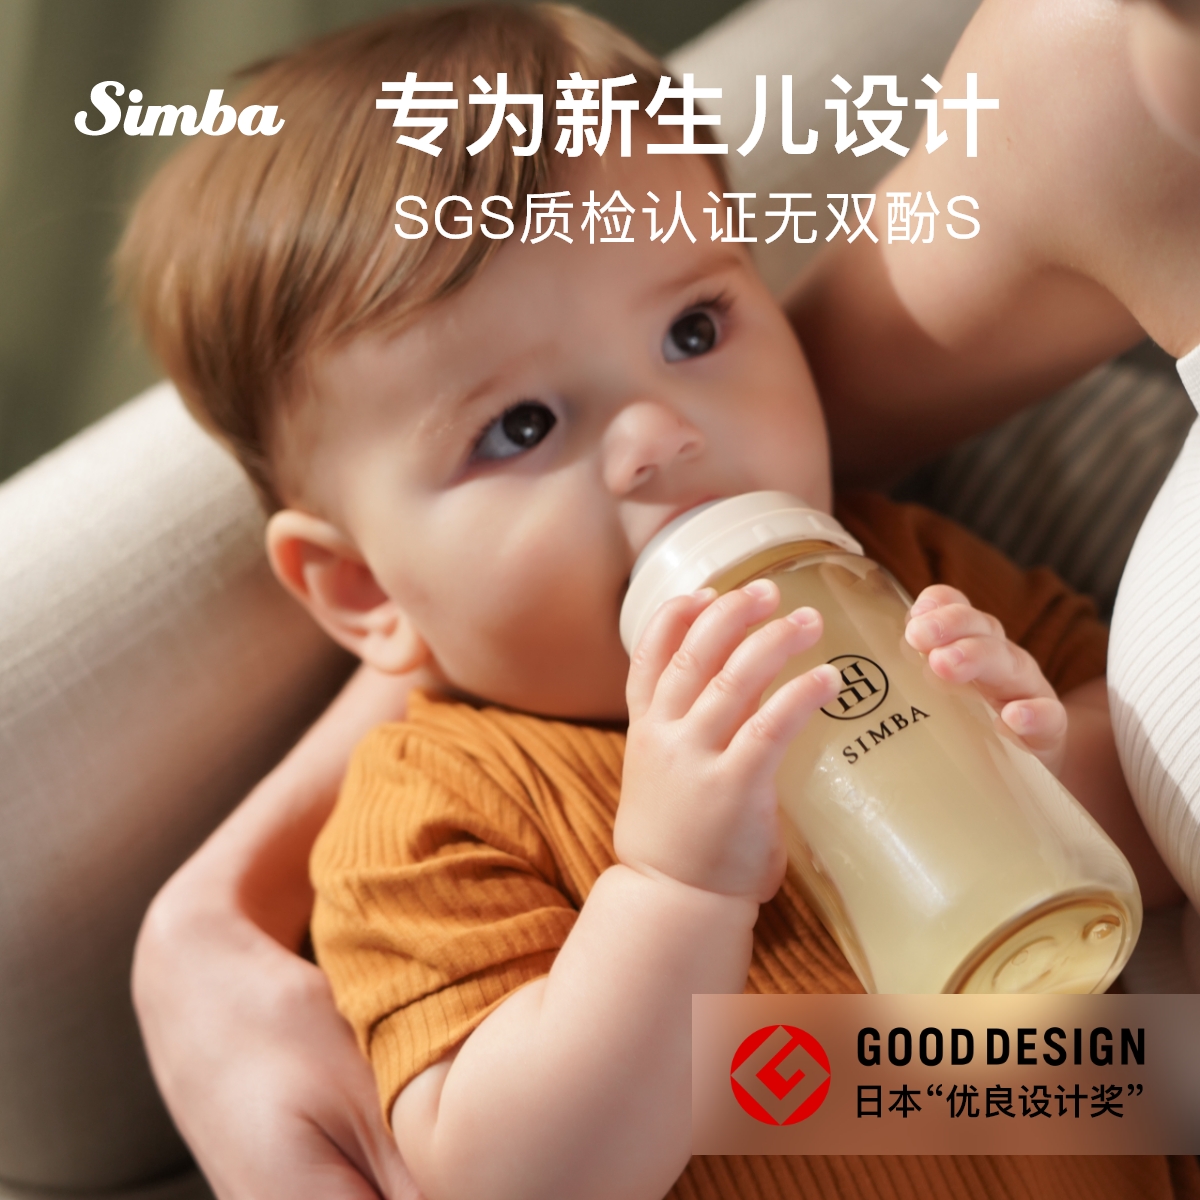 小狮王辛巴蕴蜜吸管奶瓶PPSU宝宝6个月1-2-3岁以上新生儿婴儿耐摔